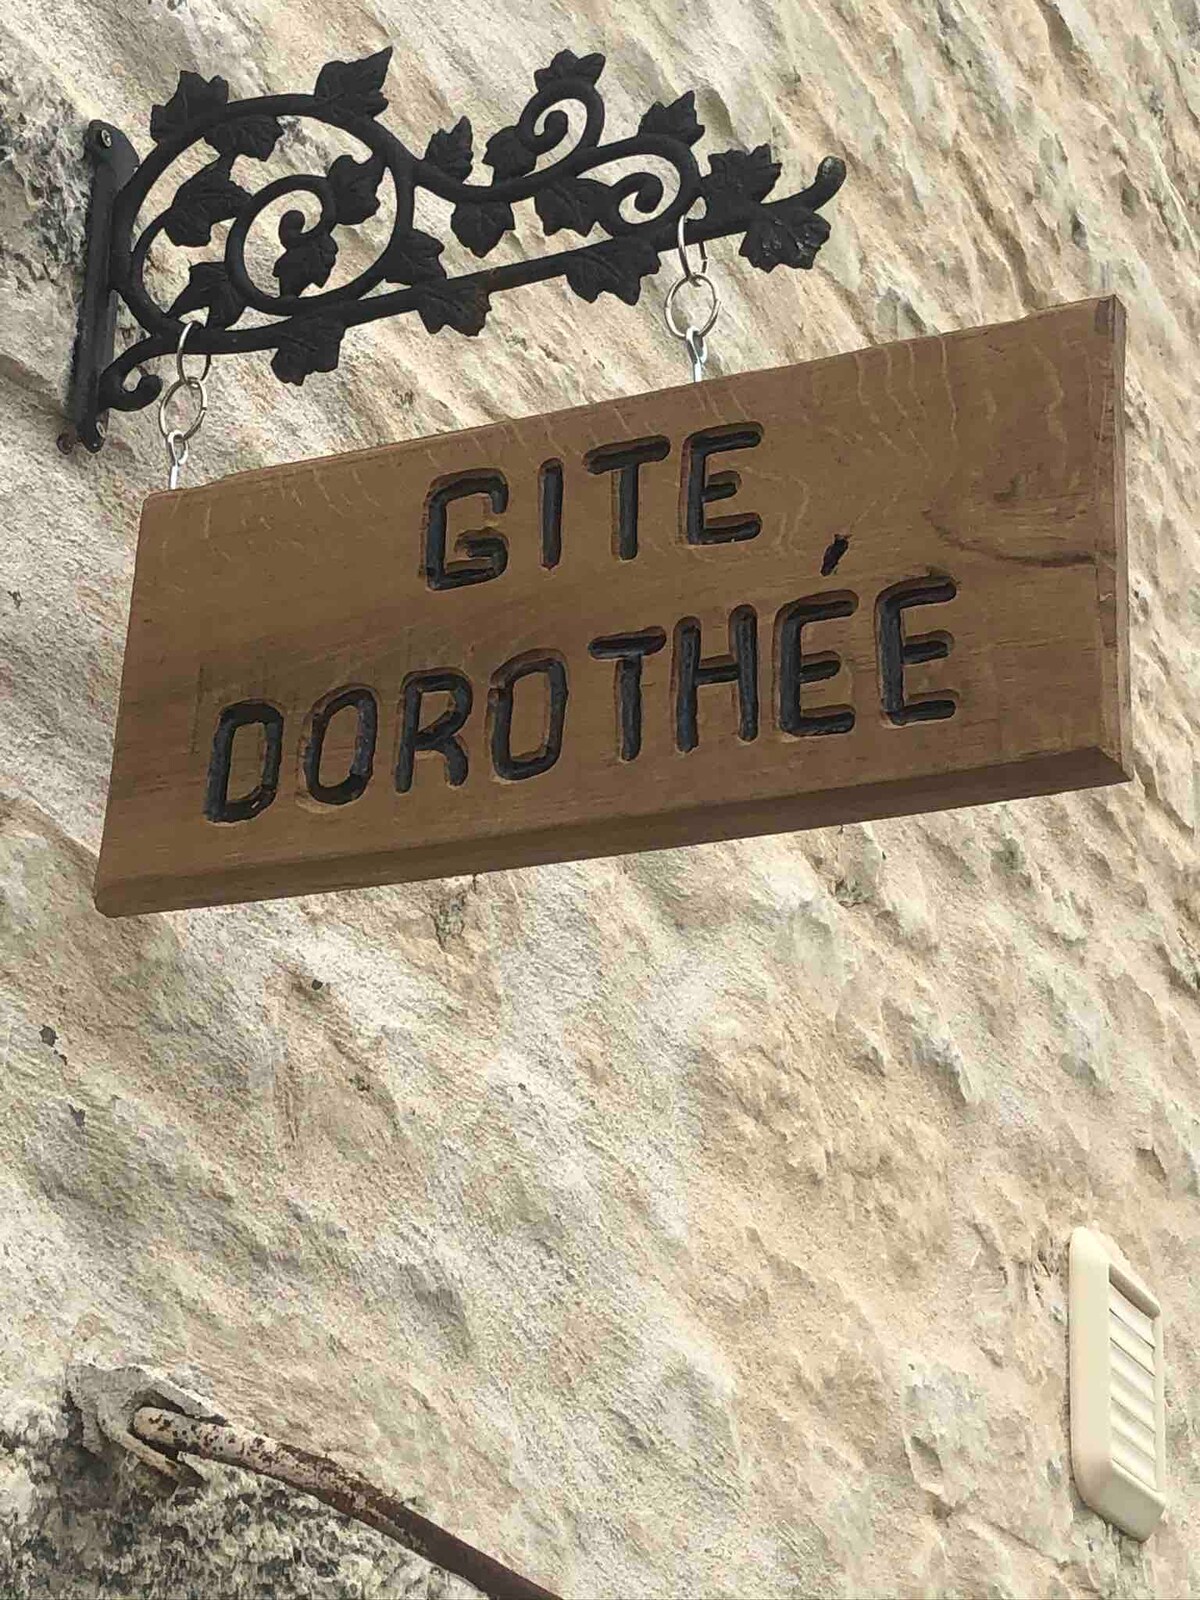 Gite Dorothee